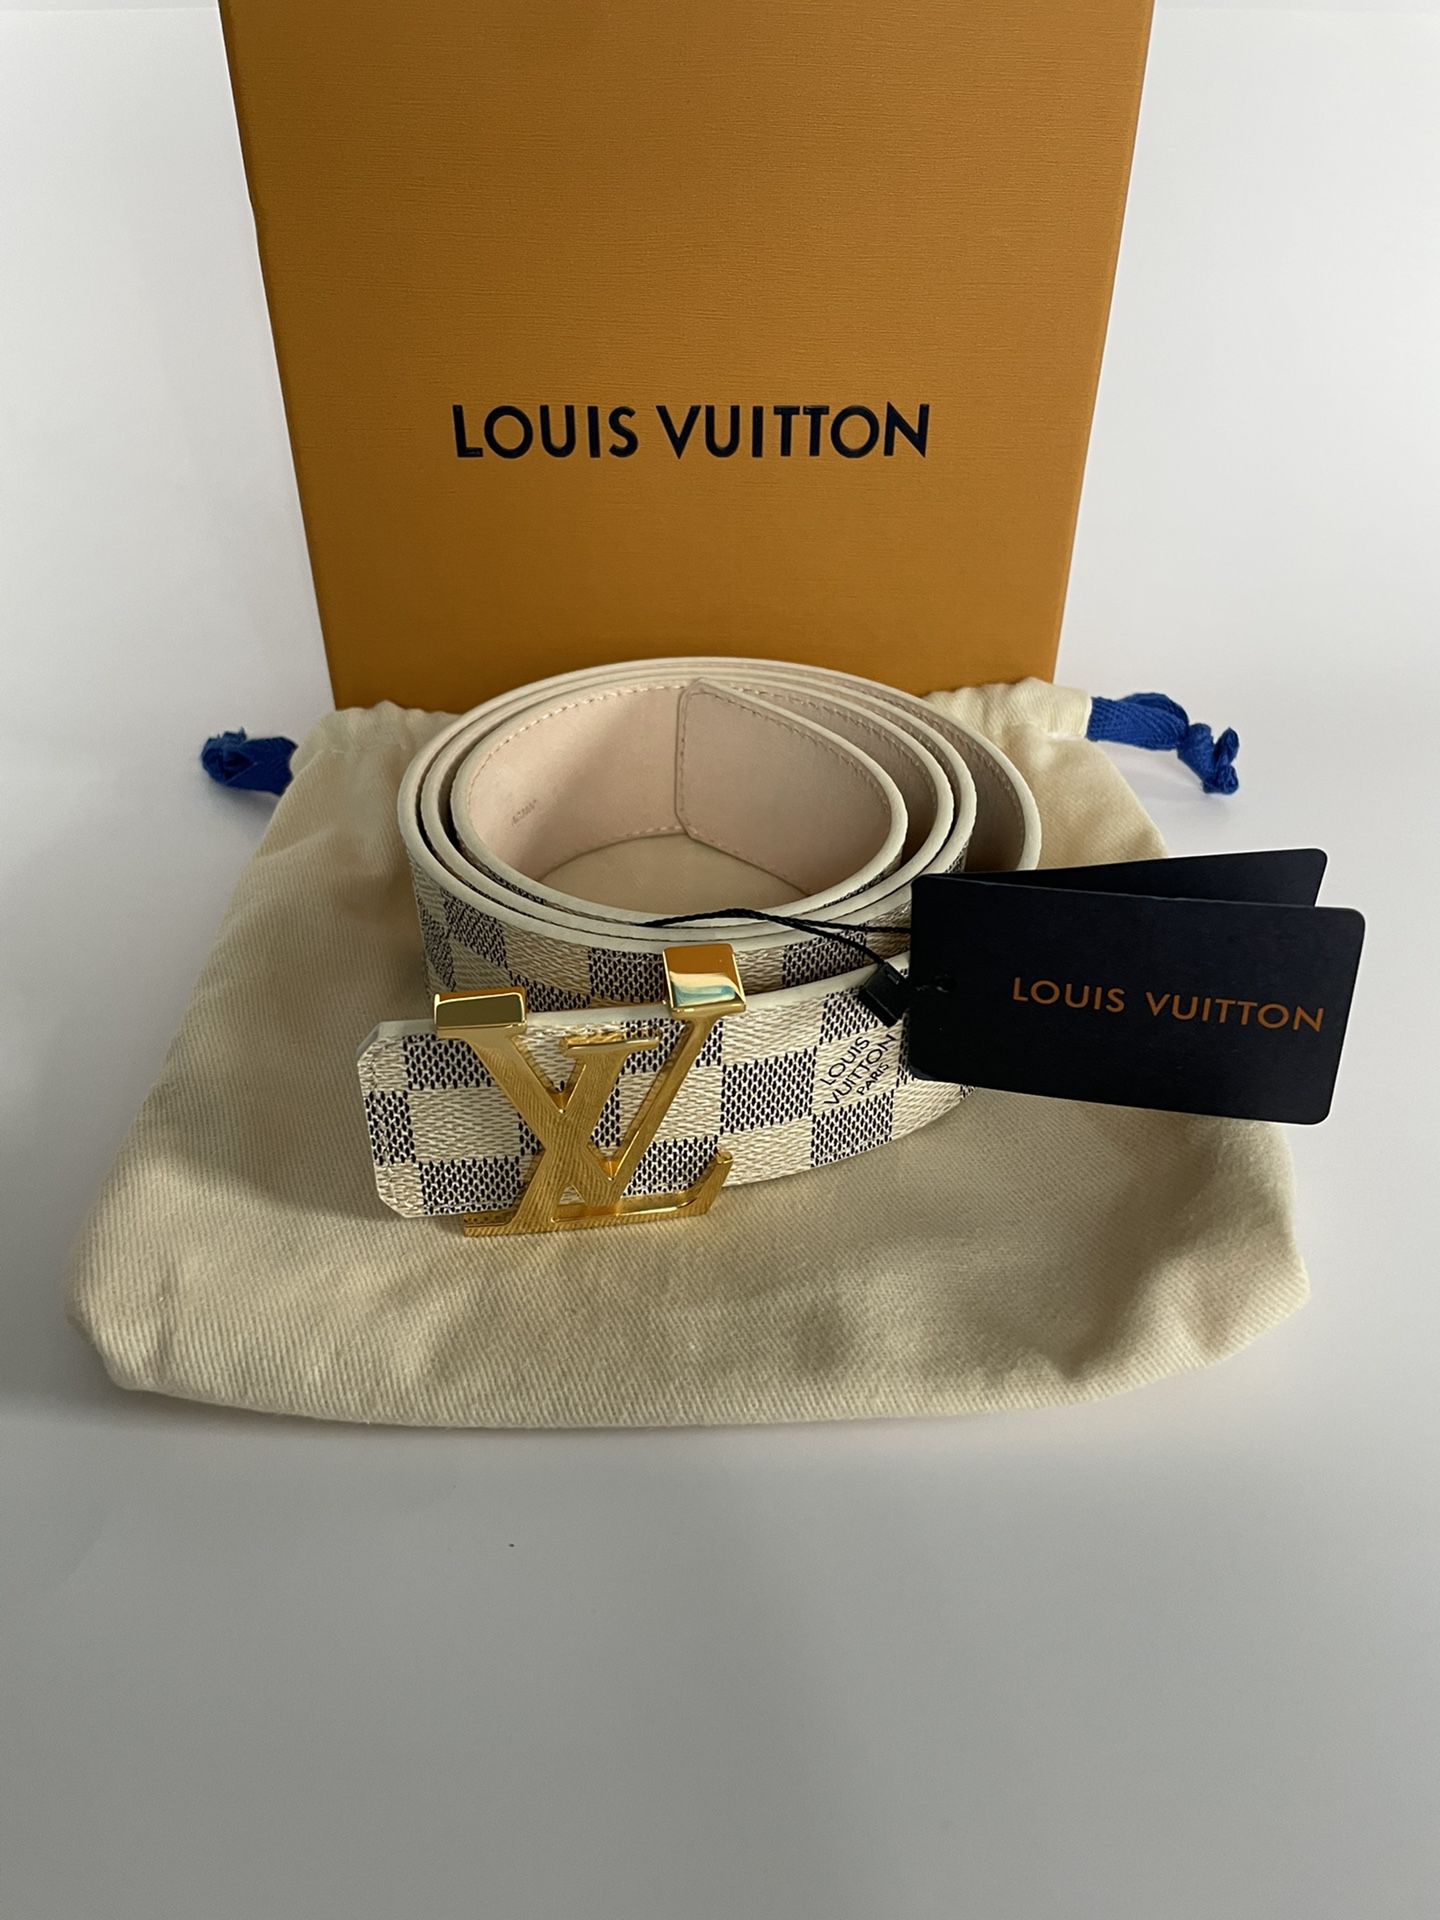 100% Authentic New Louis Vuitton Belt Size 100/40